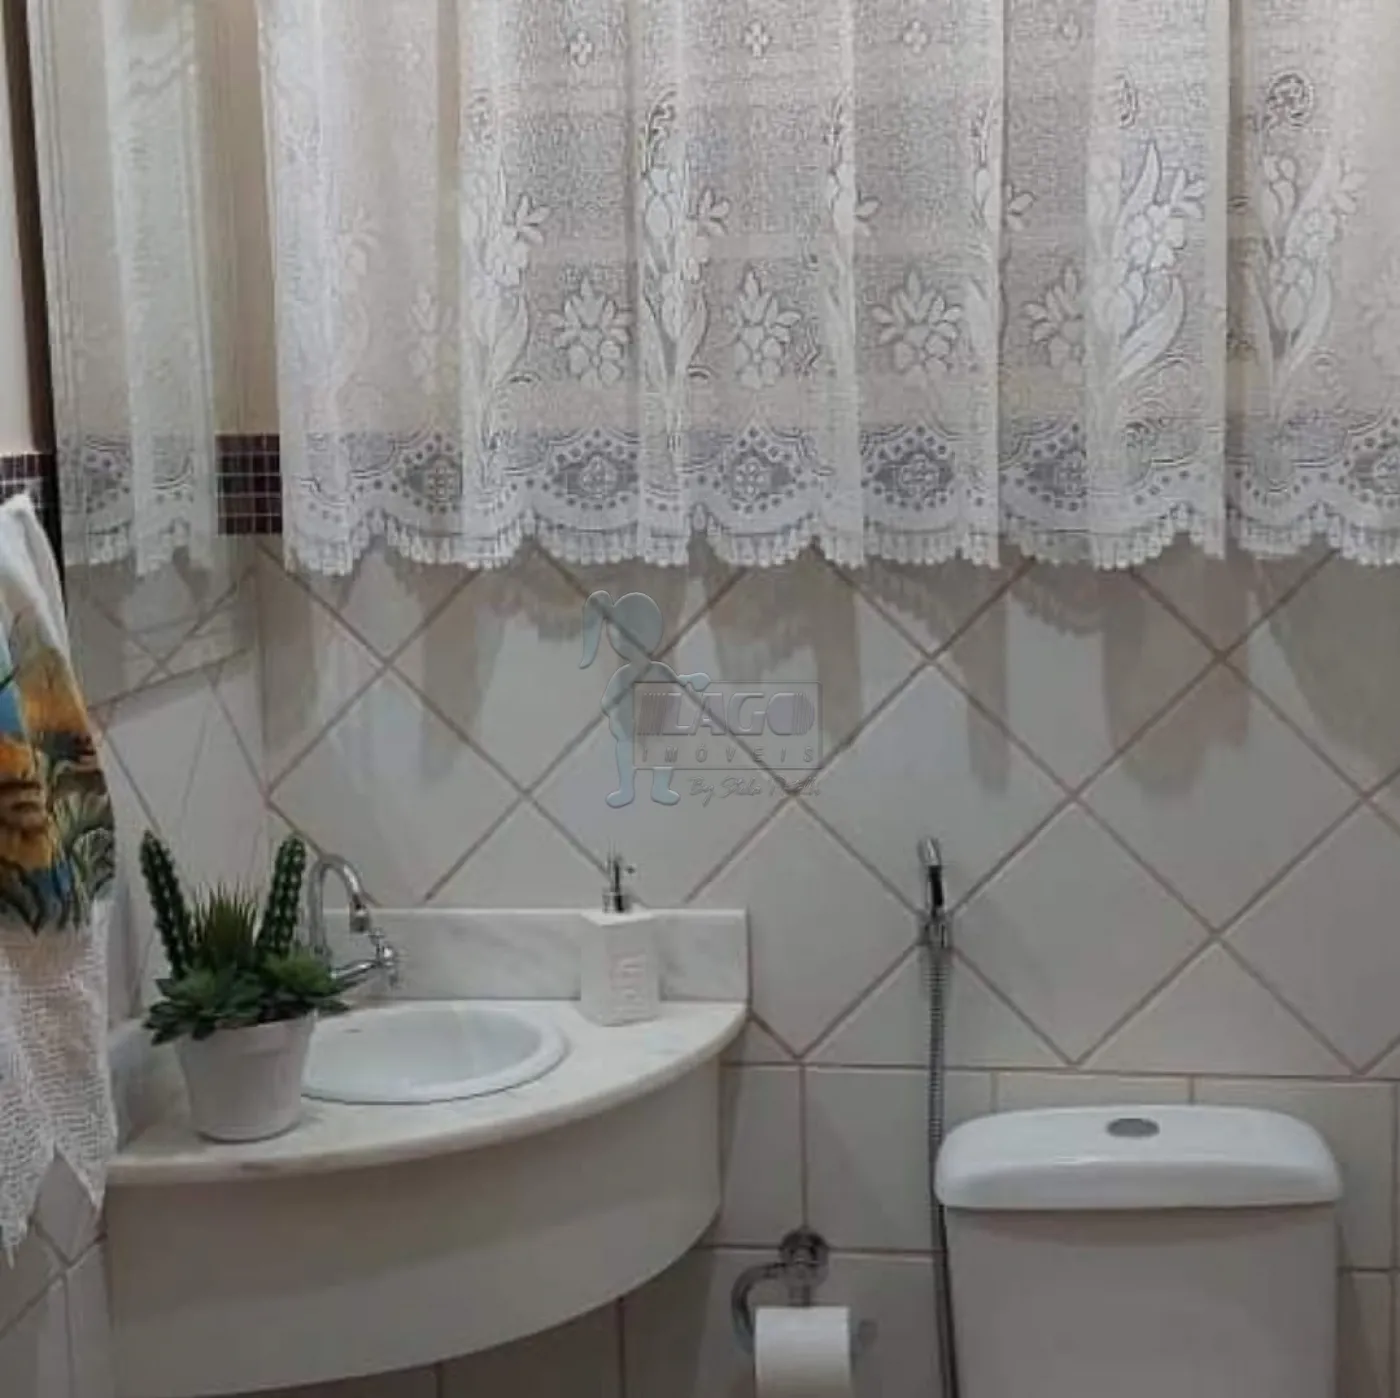 Comprar Casa / Padrão em Ribeirão Preto R$ 600.000,00 - Foto 2